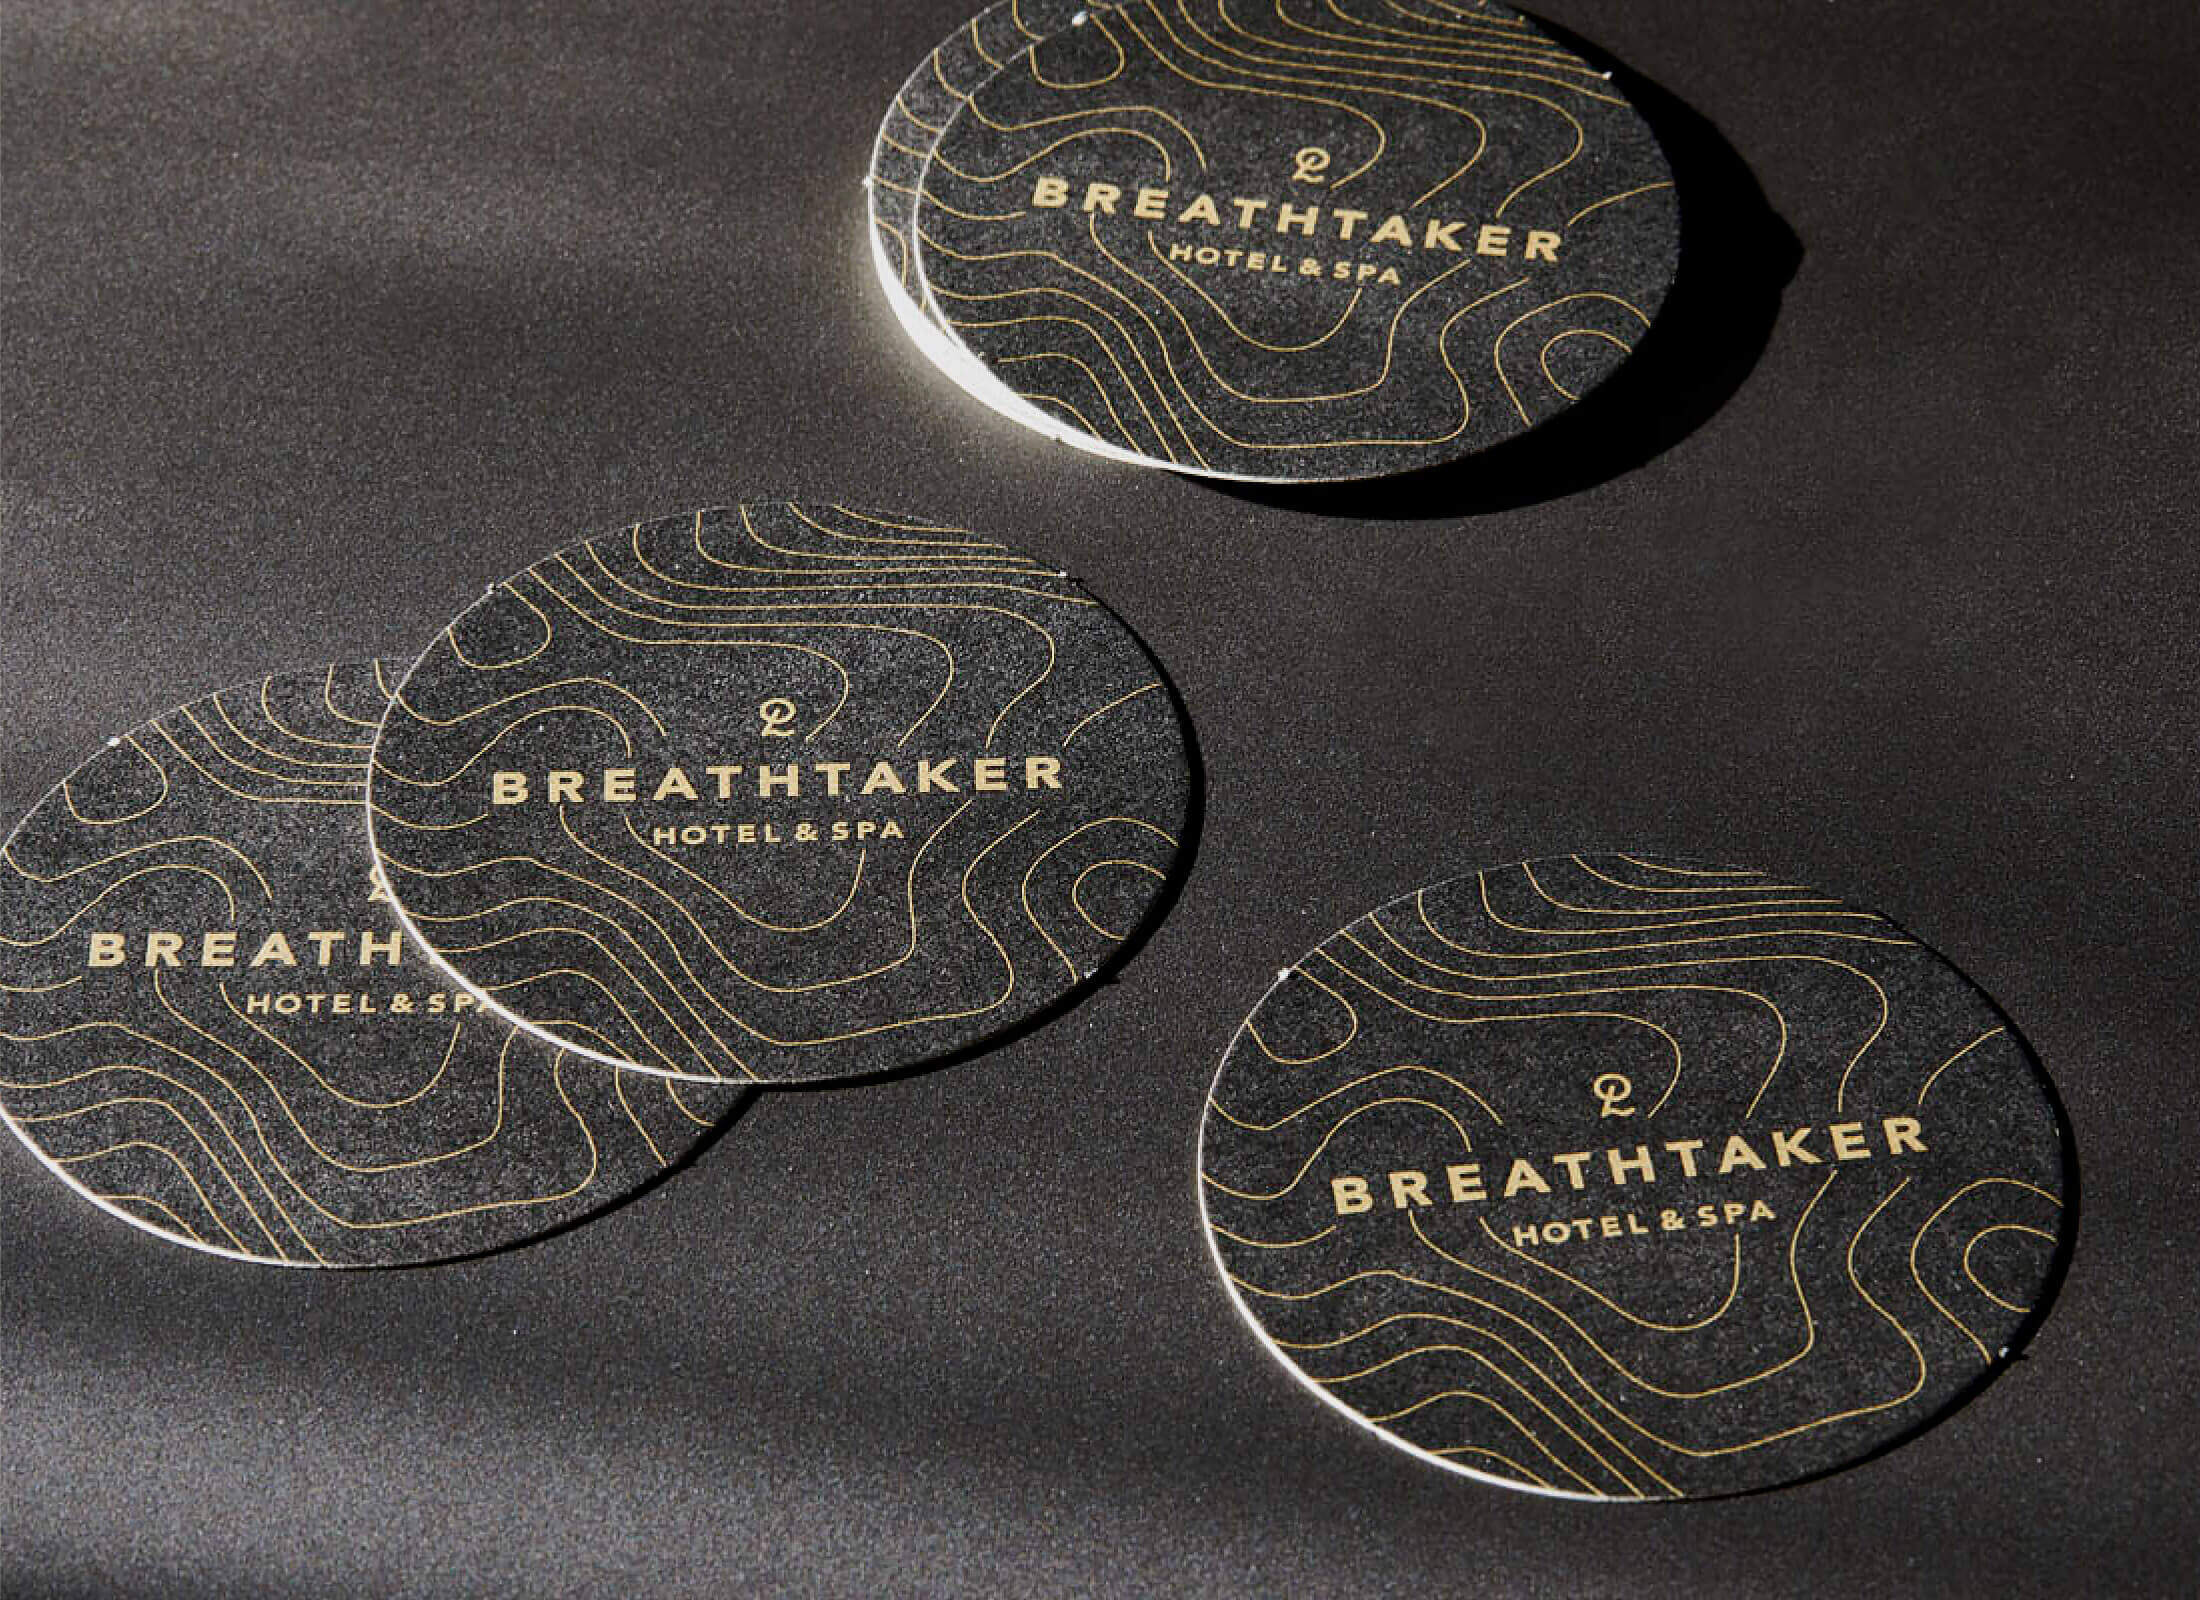 Breathtaker